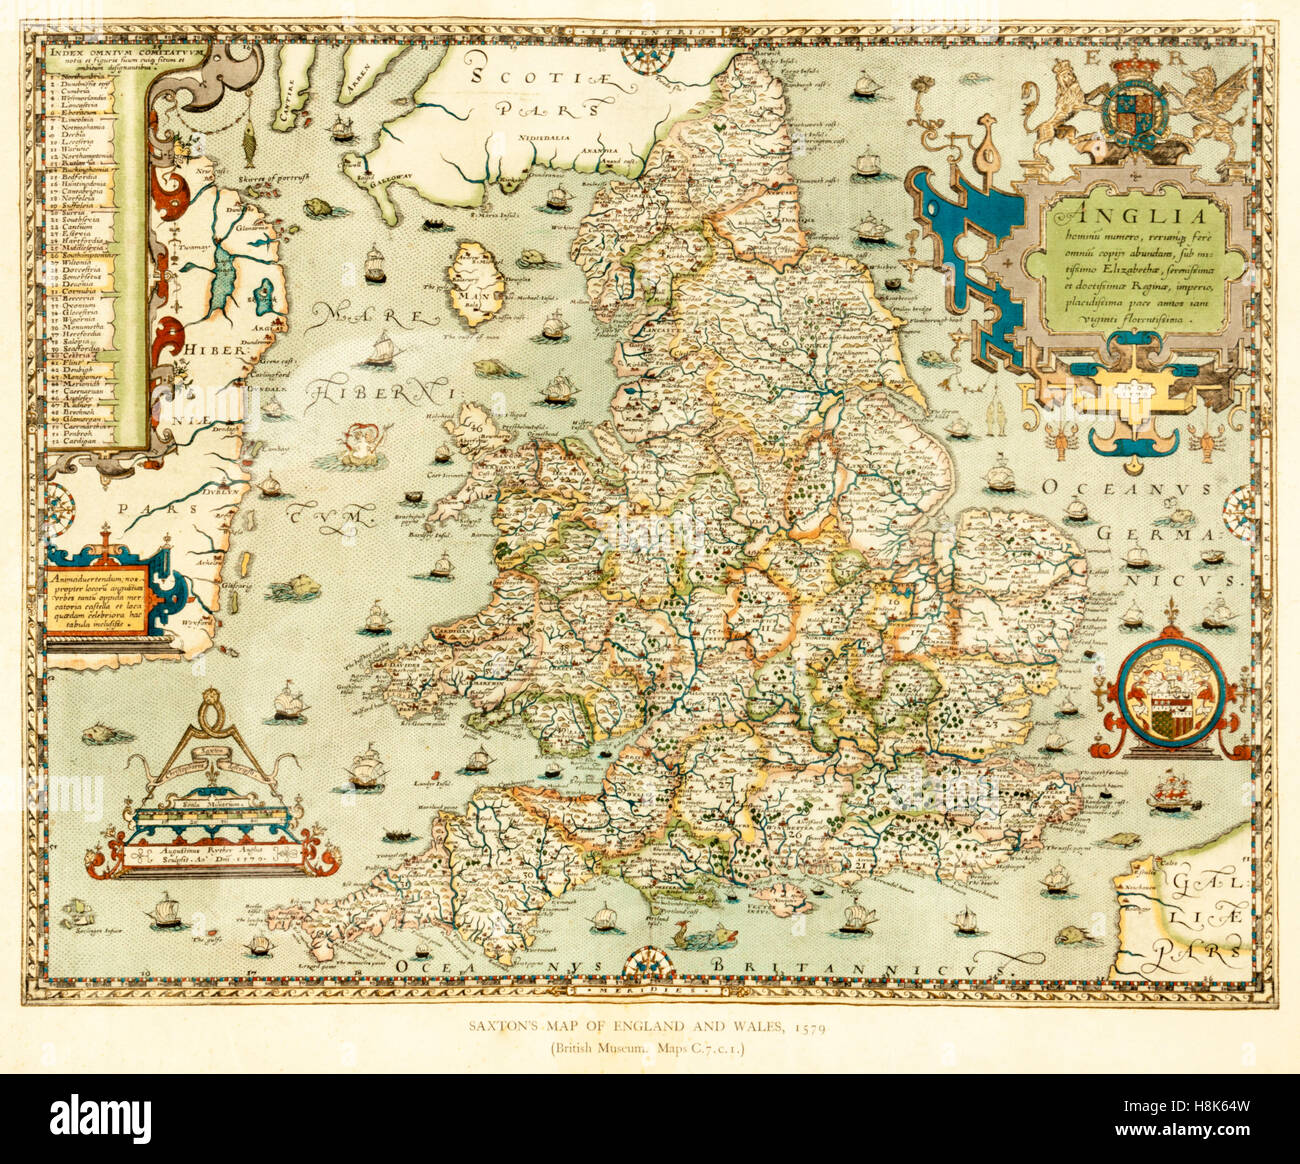 Christopher Saxton carte vue de l'Angleterre et au Pays de Galles (1579), une partie de 'Atlas des comtés d'Angleterre et du Pays de Galles' Banque D'Images